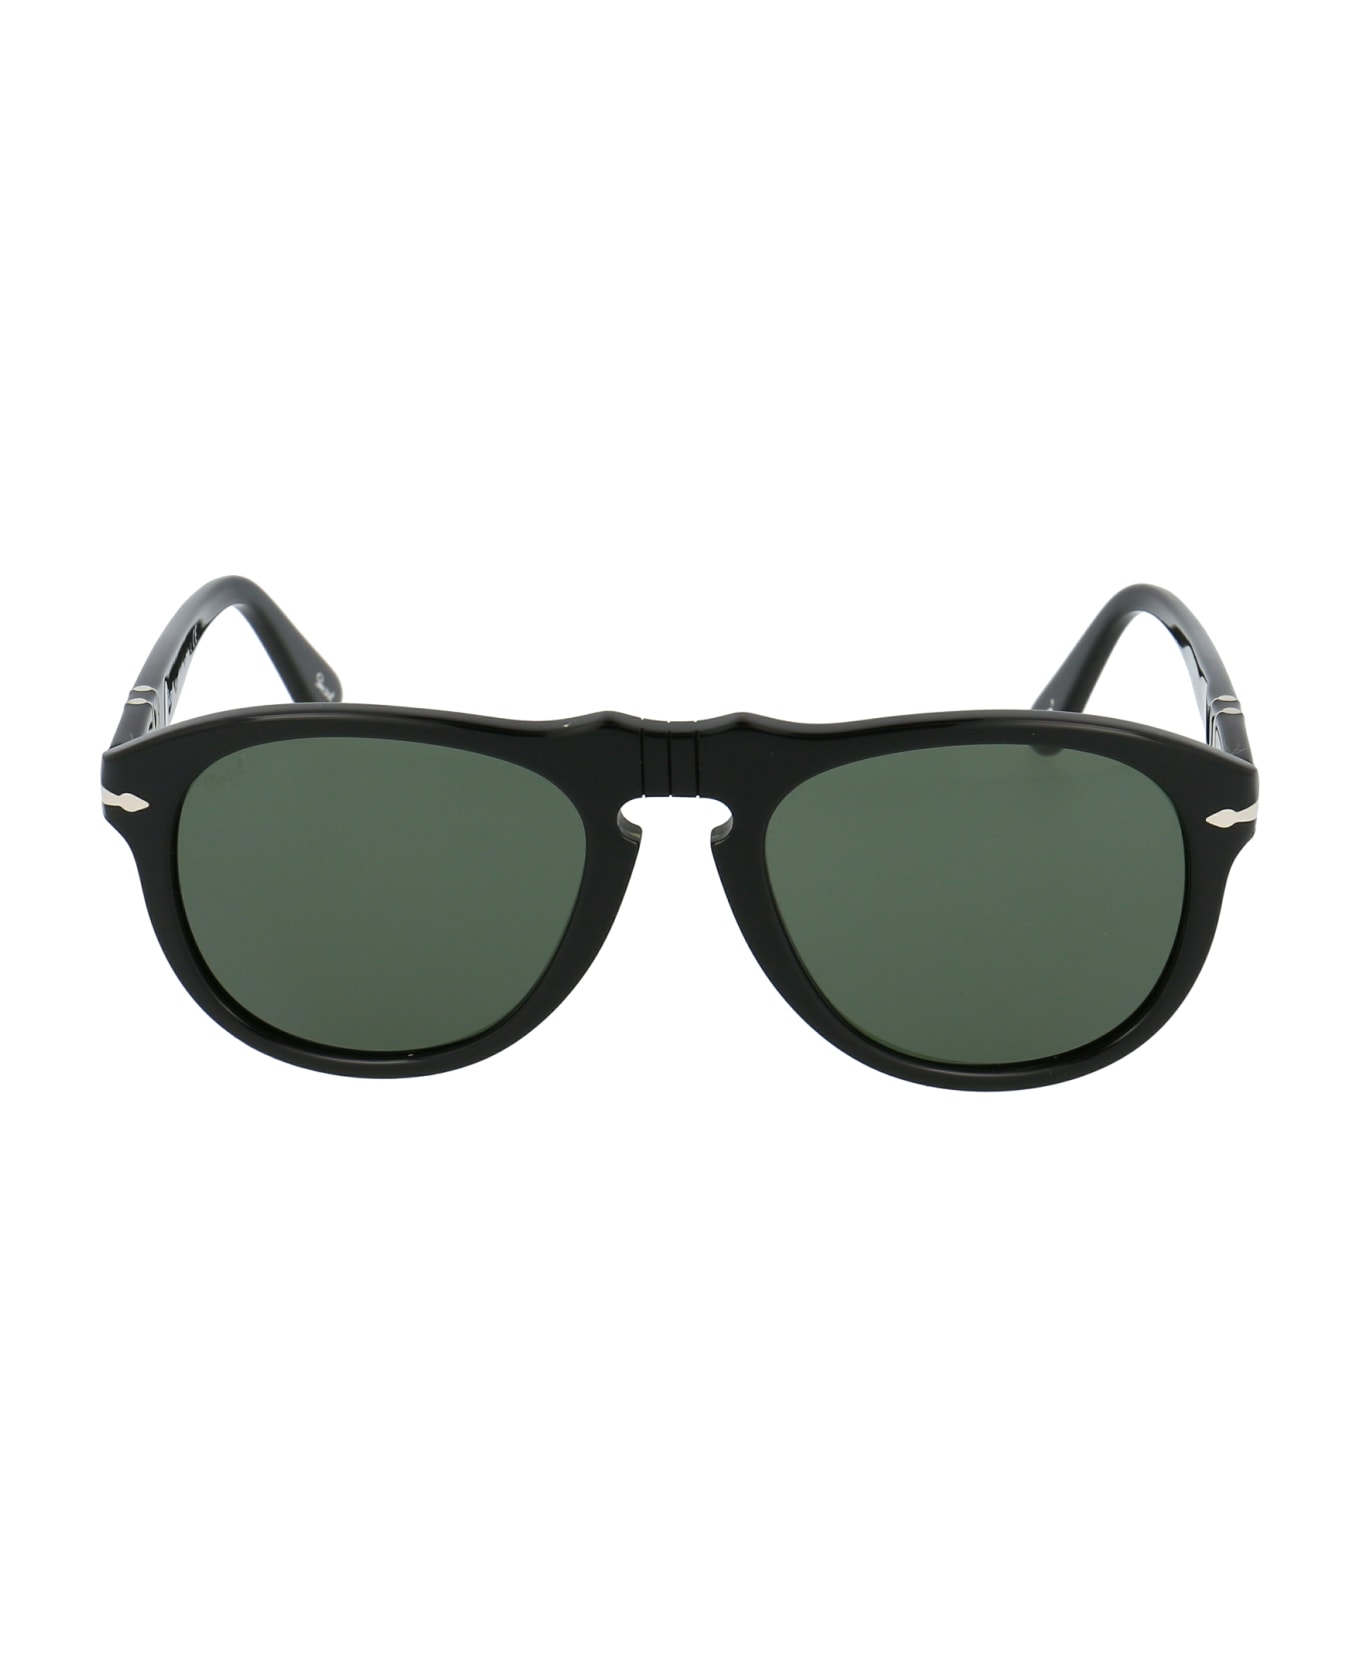 Persol 0po0649 Sunglasses - 95/31 BLACK